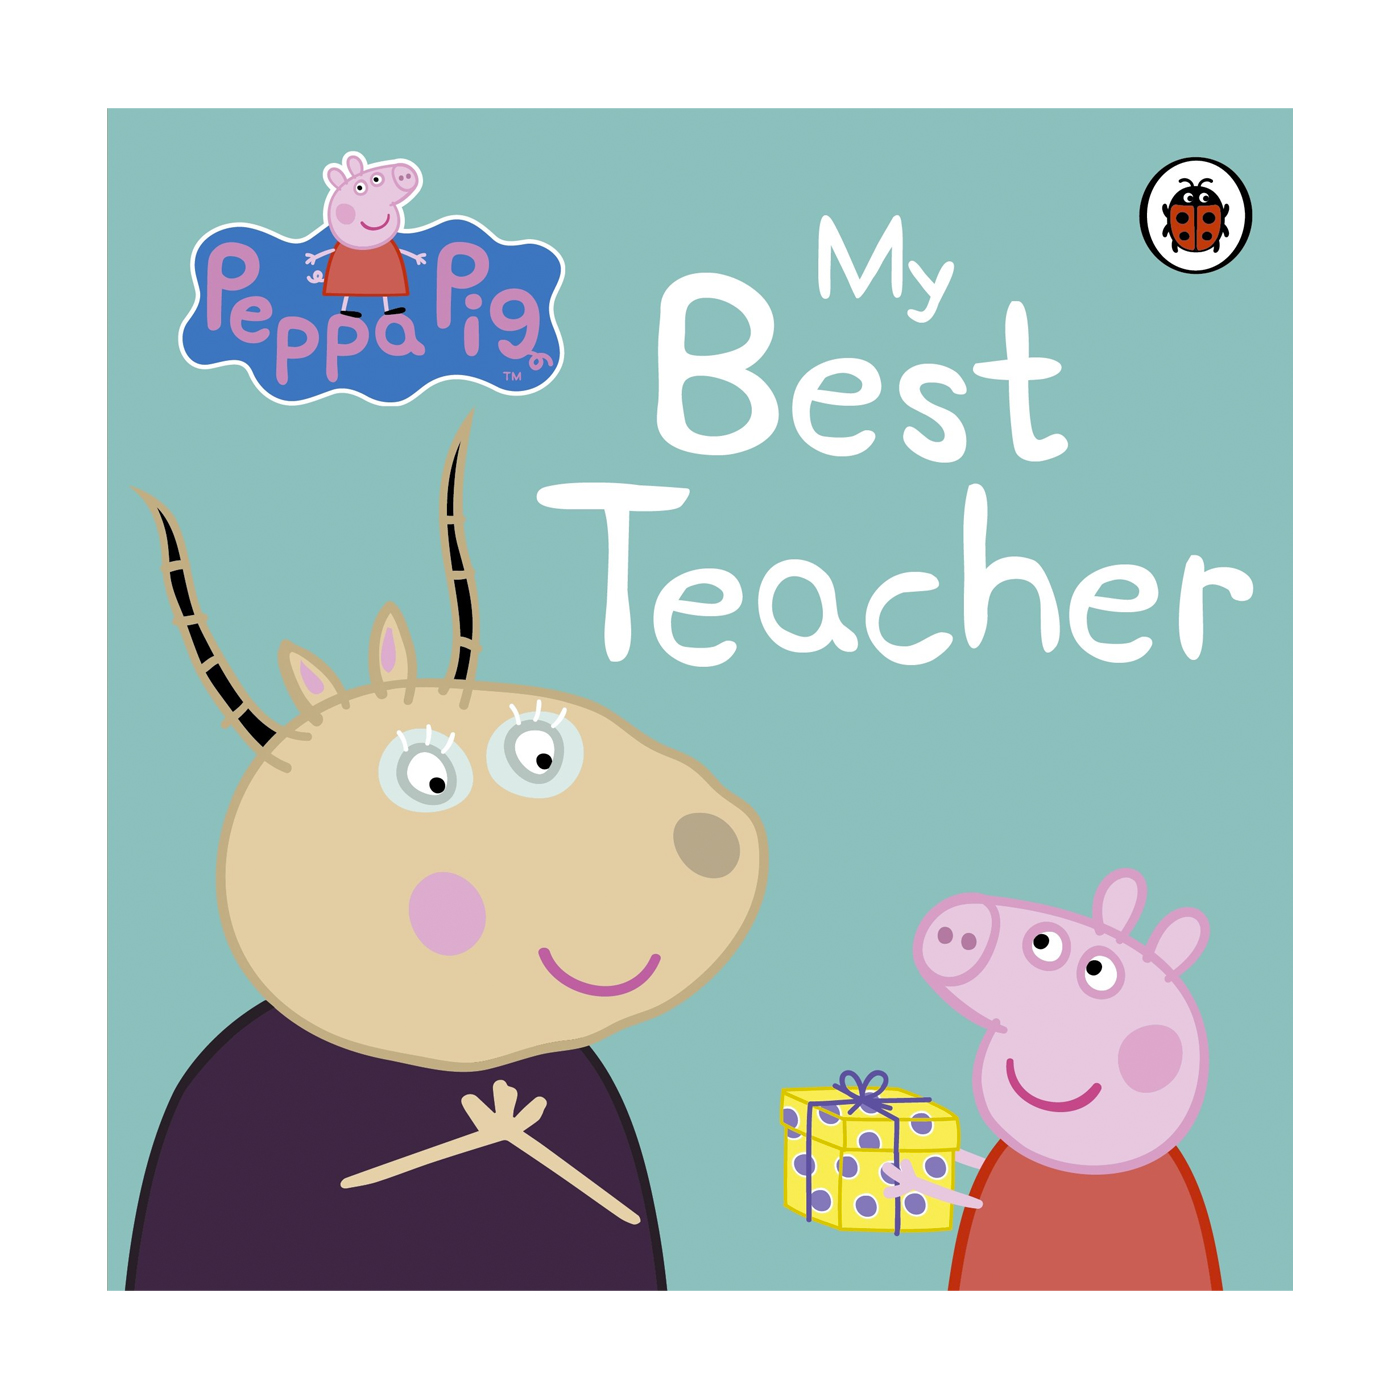  Peppa Pig: My Best Teacher